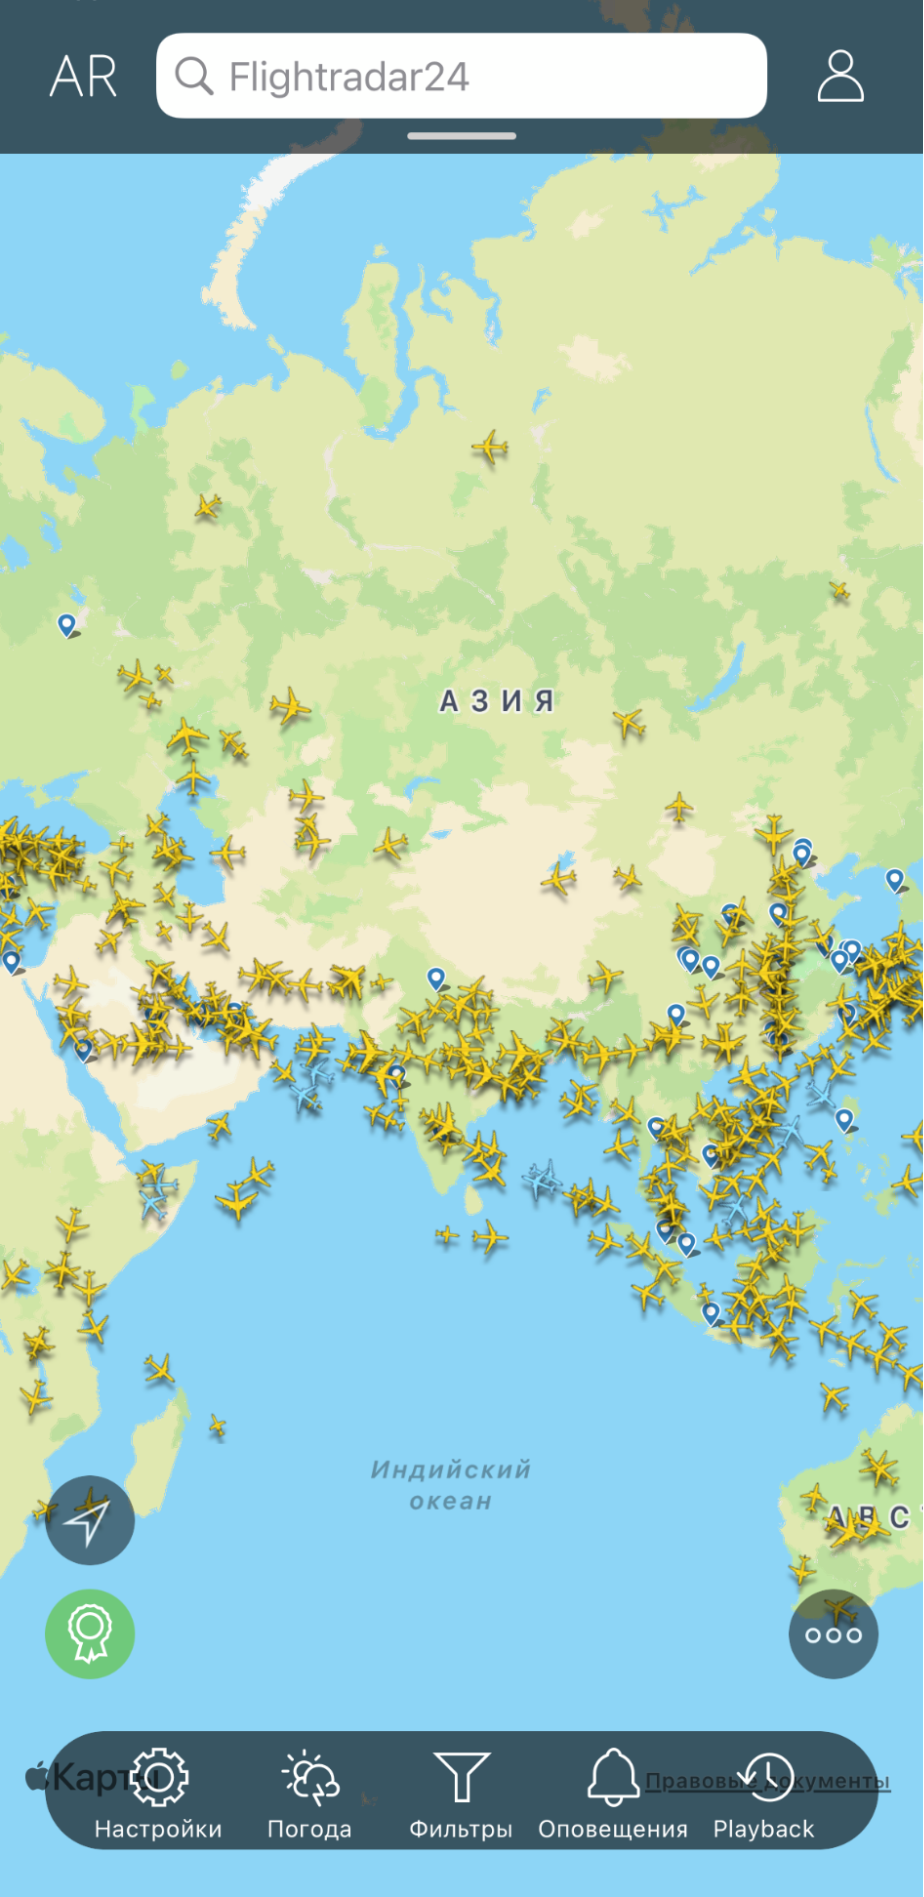 Через Flightradar можно оценить мировой авиационный трафик и узнать подробную информацию о конкретном рейсе